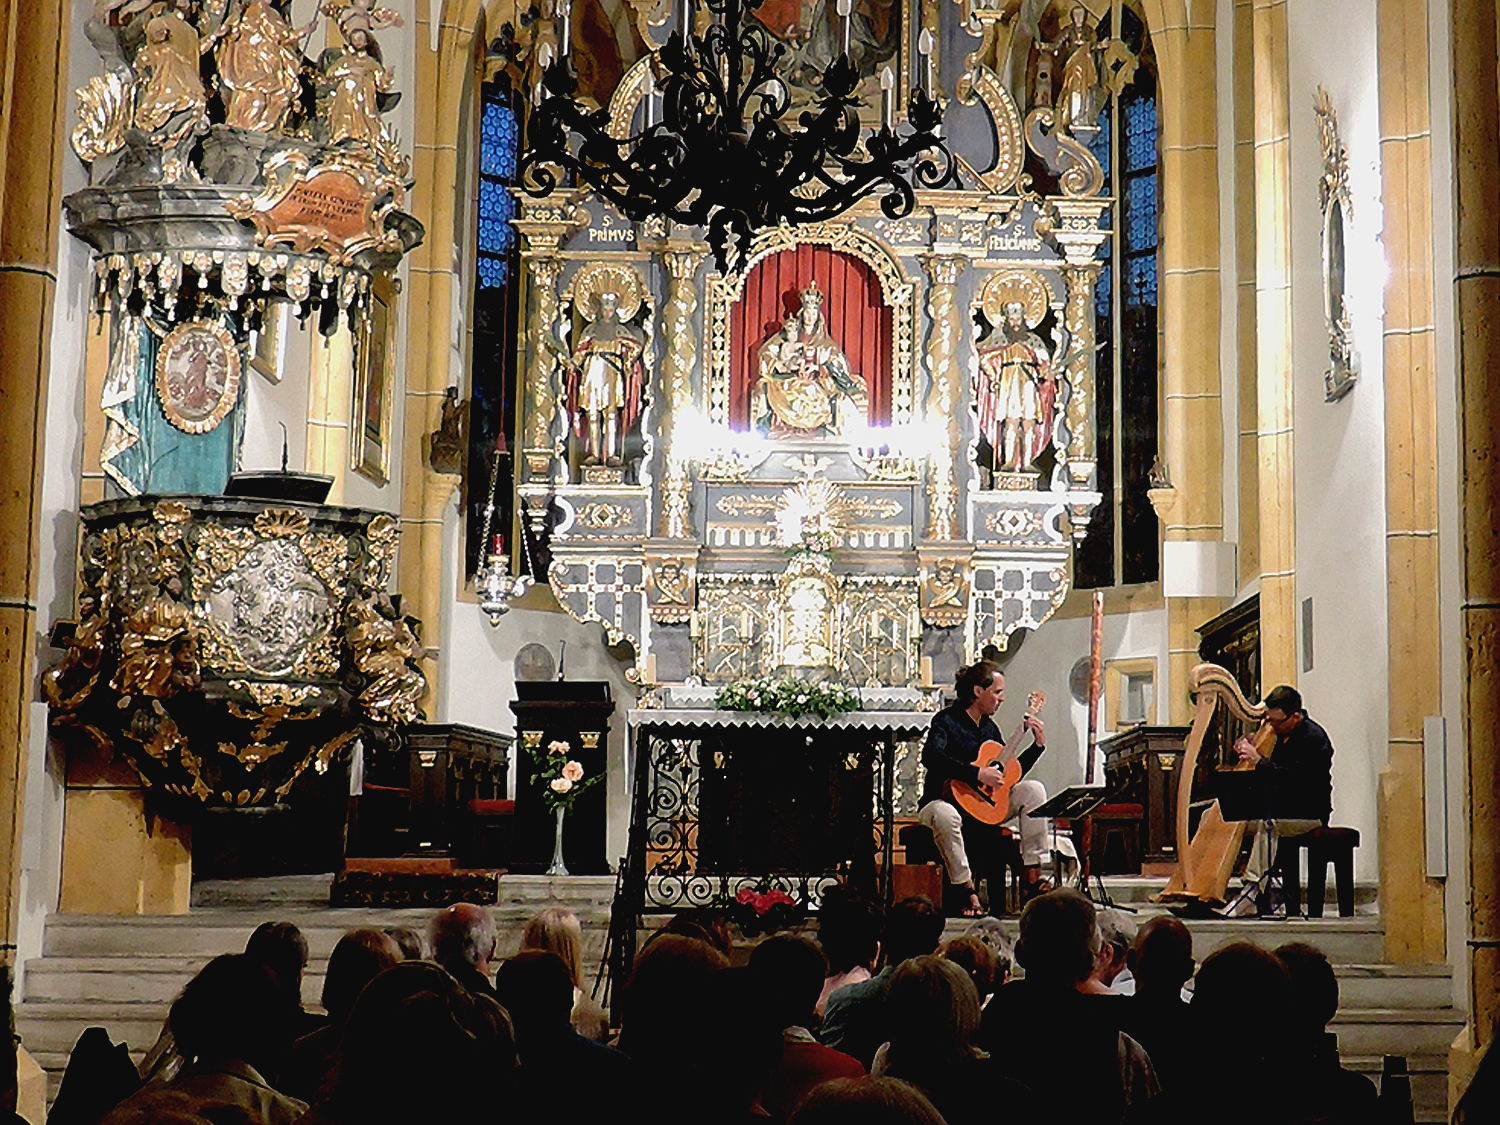 Mikuskovics Baum live @ Pilgrimage church, Maria Wörth, Austria